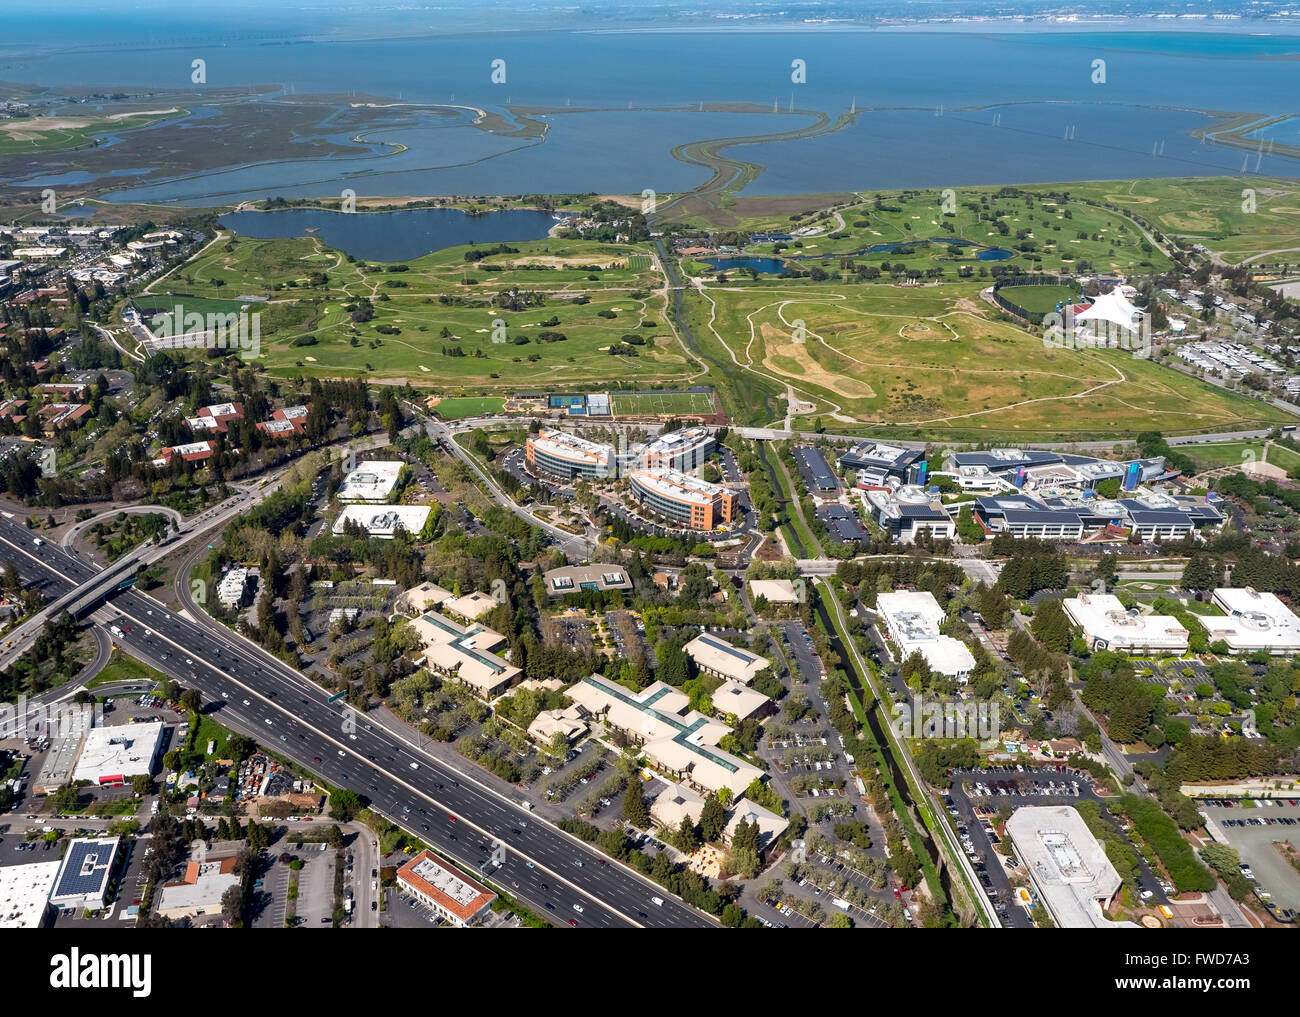 La sede centrale di Google Googleplex, Silicon Valley, California, Stati Uniti d'America, Santa Clara, California, USA, foto aeree Foto Stock